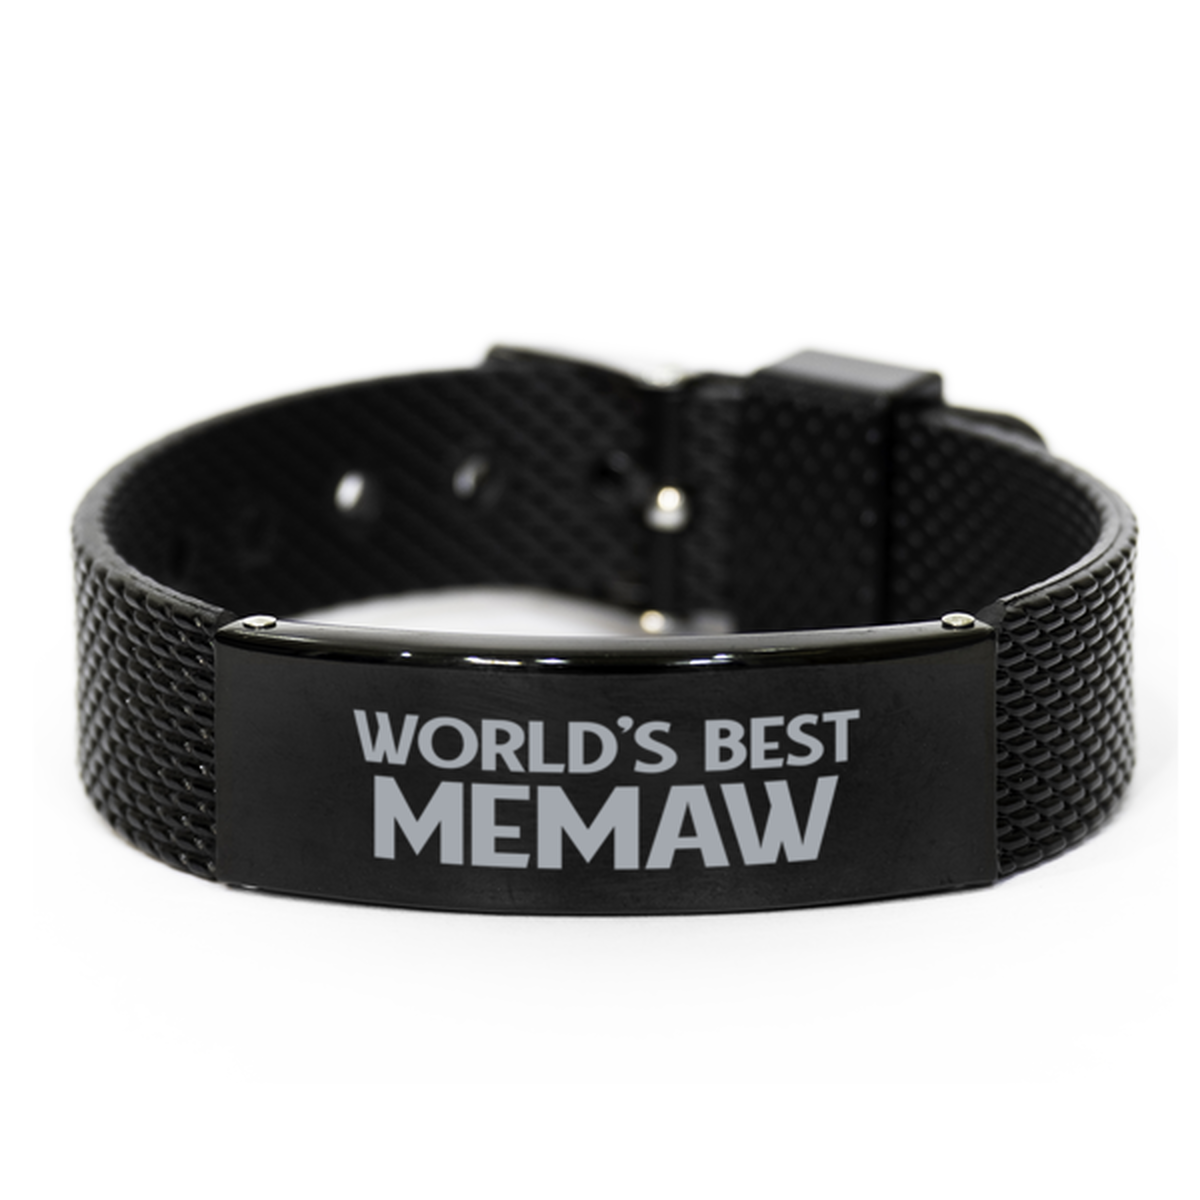 World's Best Memaw Gifts, Gag Engraved Bracelet For Memaw, Best Family Gifts For Women